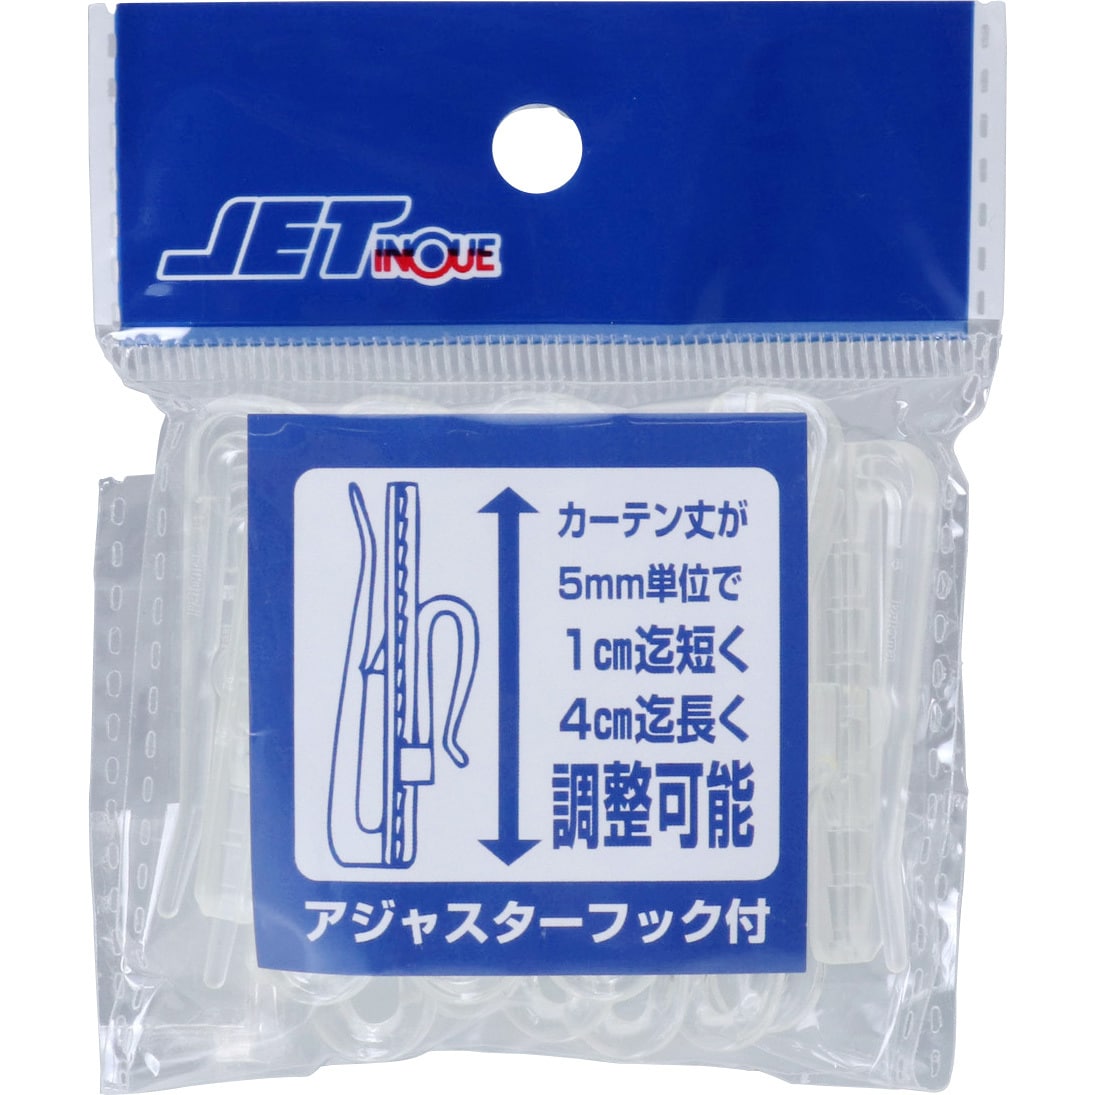 アジャスタブルカーテンフック Jet Inoue ジェットイノウエ 1セット 10個 通販モノタロウ